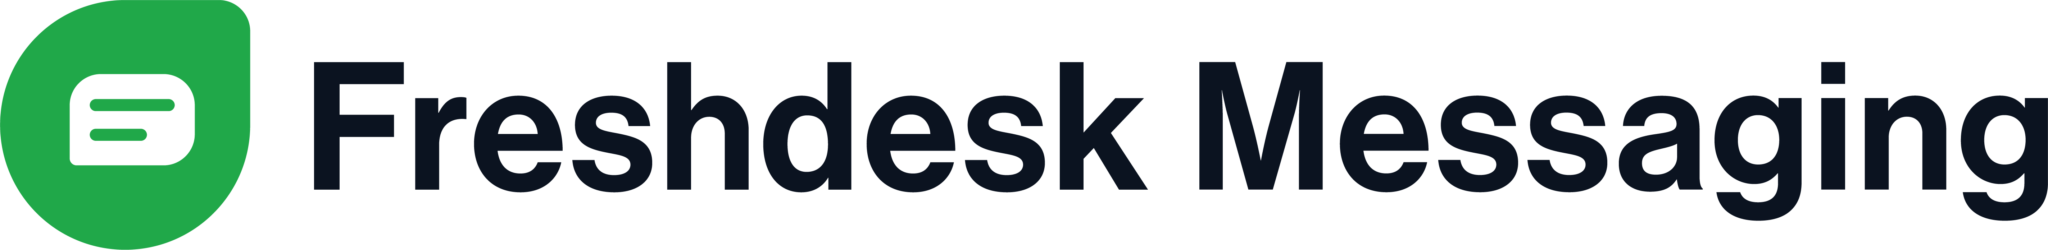 Freshdesk Messaging-logo